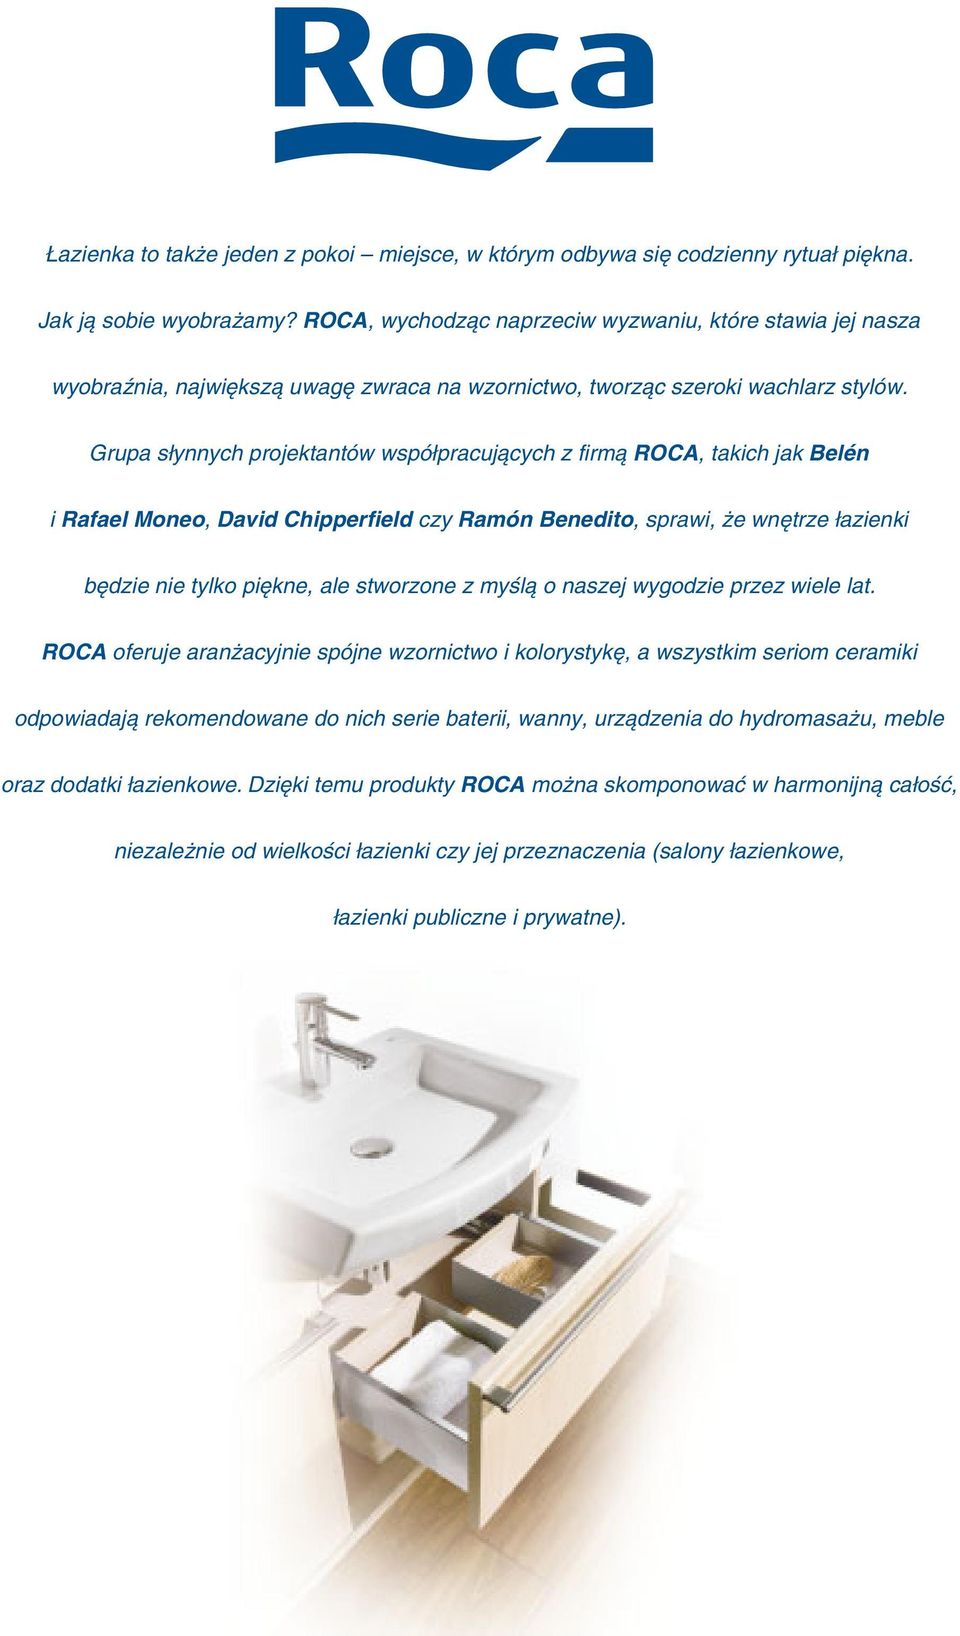 Grupa słynnych projektantów współpracujących z firmą ROCA, takich jak Belén i Rafael Moneo, David Chipperfield czy Ramón Benedito, sprawi, że wnętrze łazienki będzie nie tylko piękne, ale stworzone z